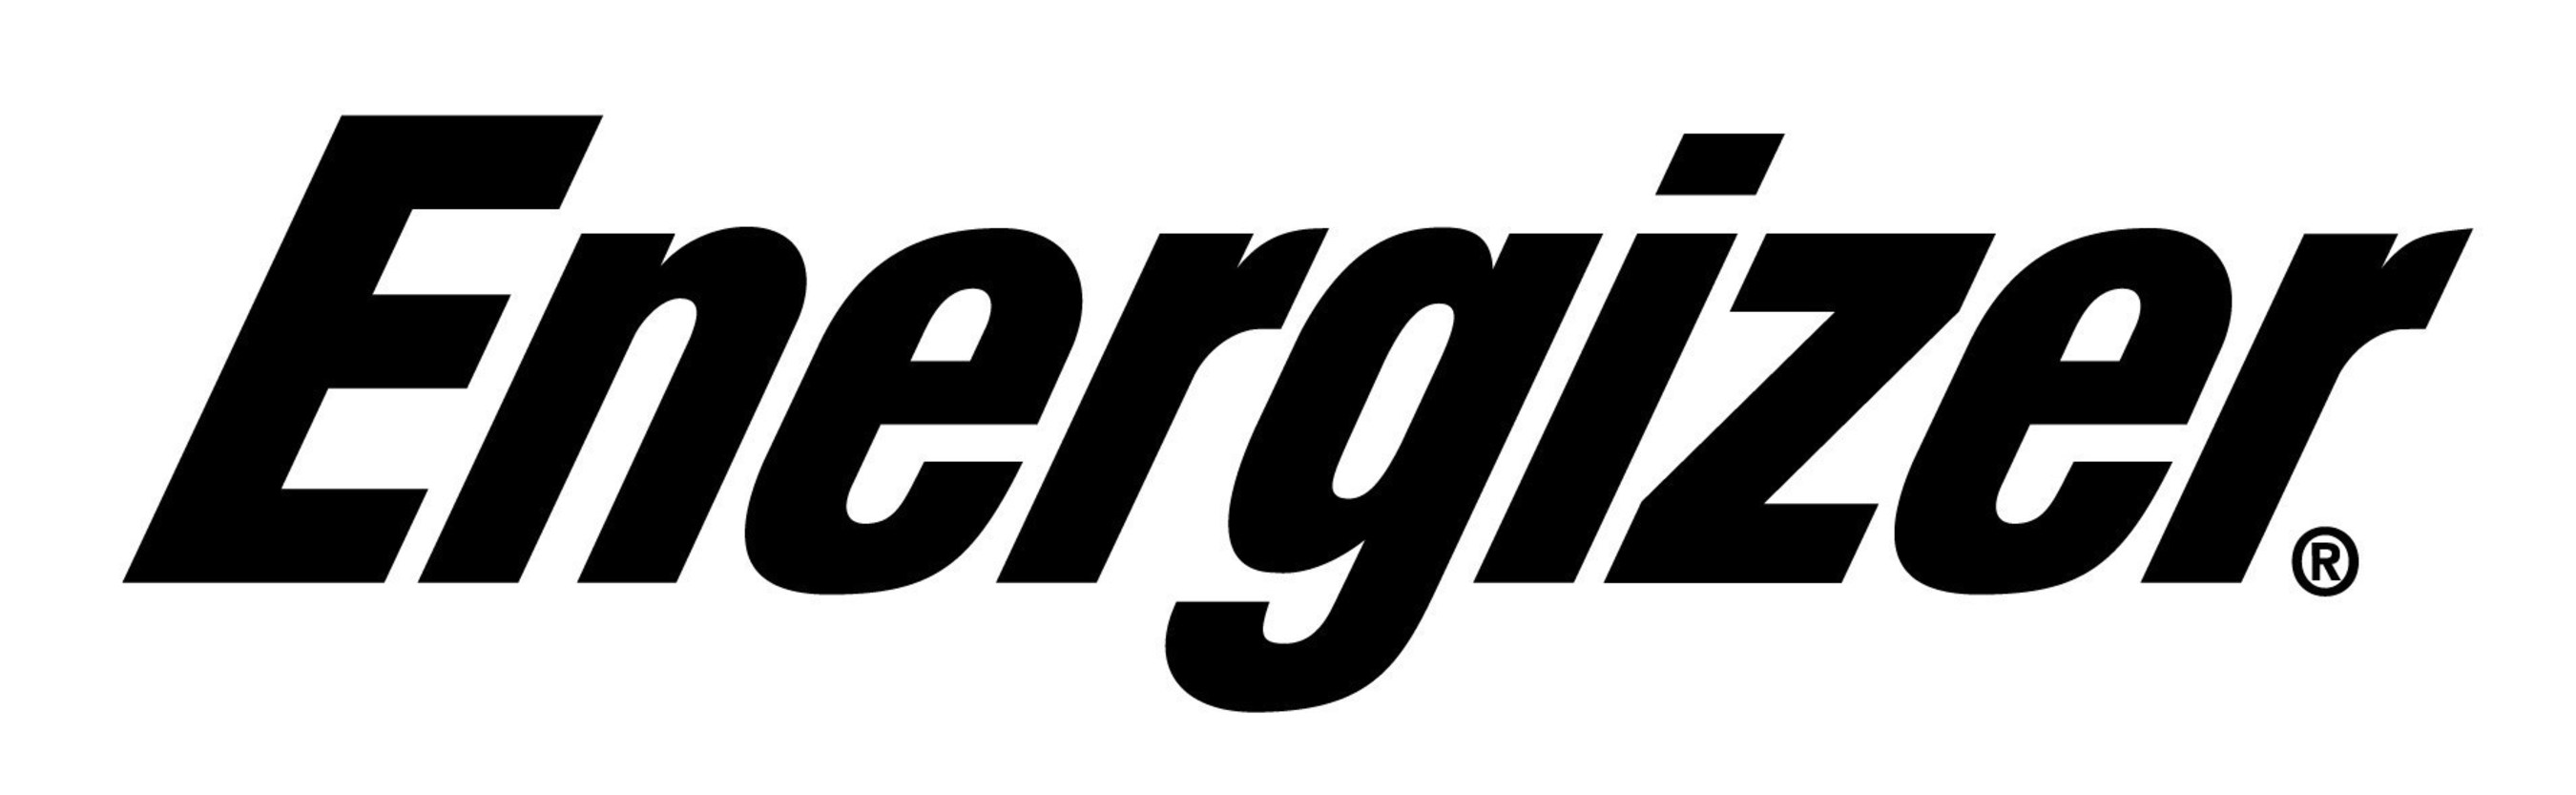 Logo firmy energizer, czarny napis Energizer